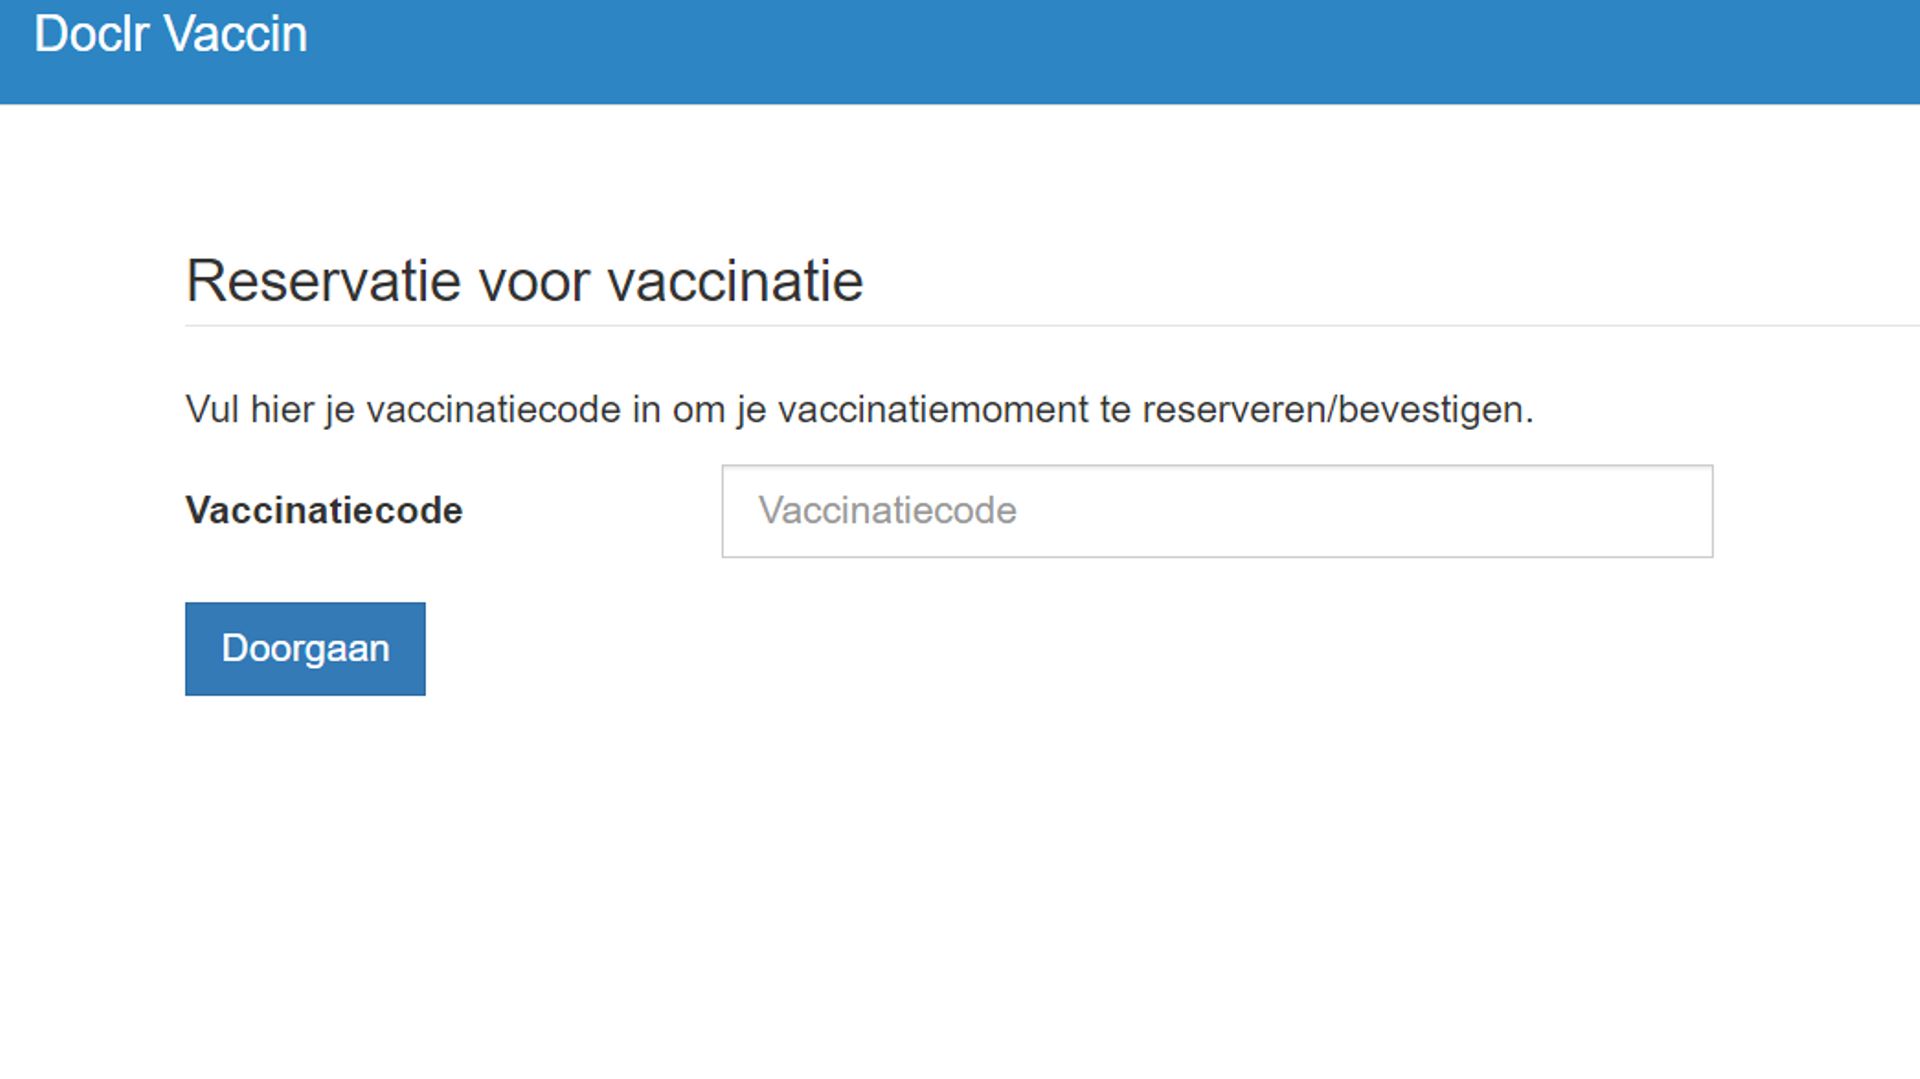 Voici la page à laquelle on aboutit depuis des liens envoyés à des francophones ou via le site jemevaccine.be